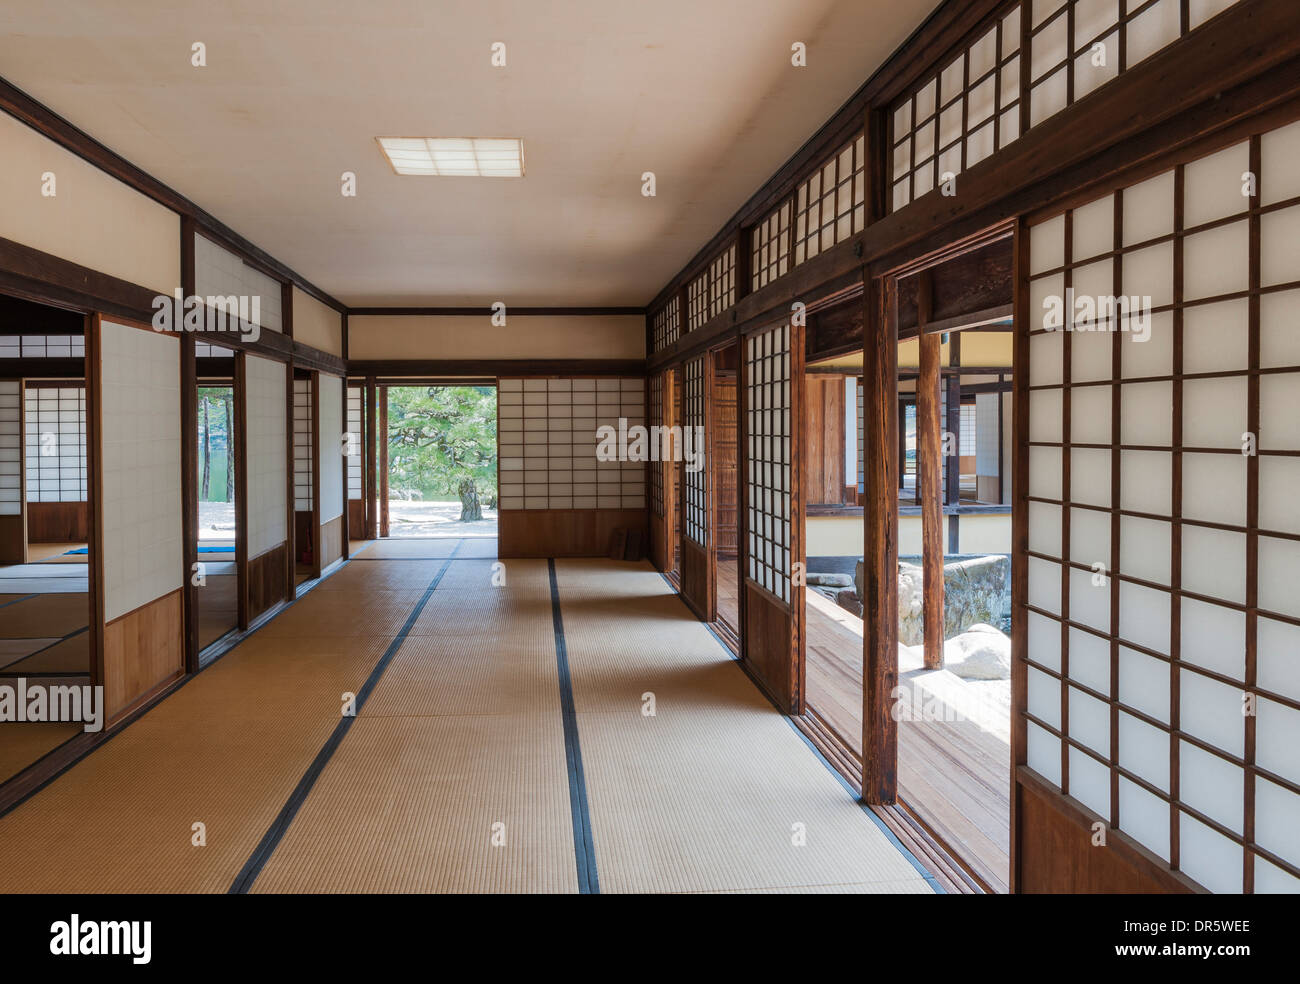 Fenêtres ou portes coulissantes en papier (shoji) à l'intérieur du salon de thé Kikugetsutei (le pavillon de la Lune) dans le jardin de Ritsurin-koen, au Japon Banque D'Images